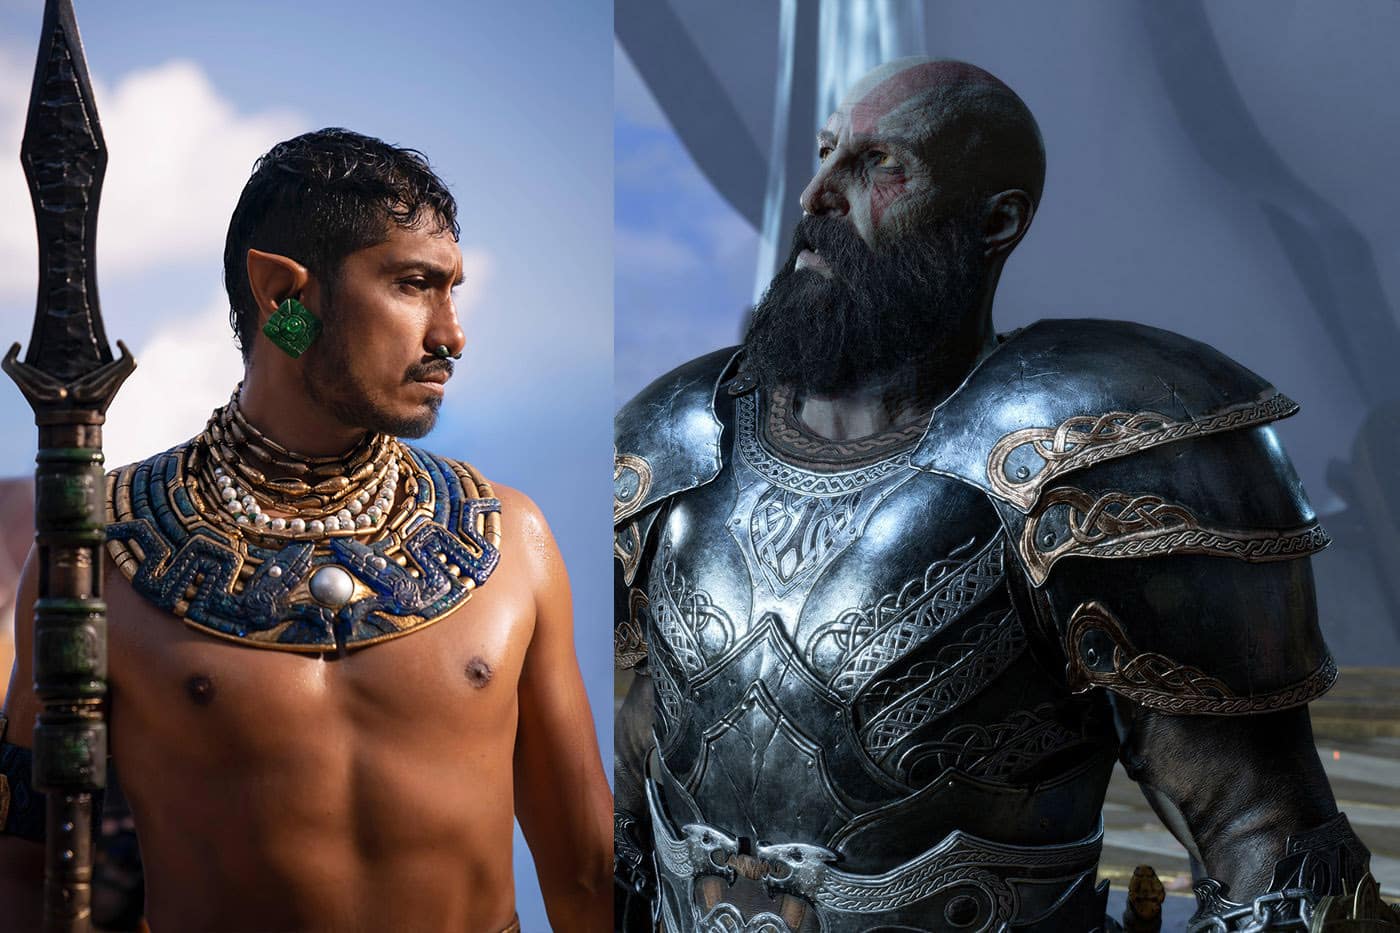 Fanáticos de God of War desean que el próximo juego se centre en la mitología azteca o maya, GamersRD